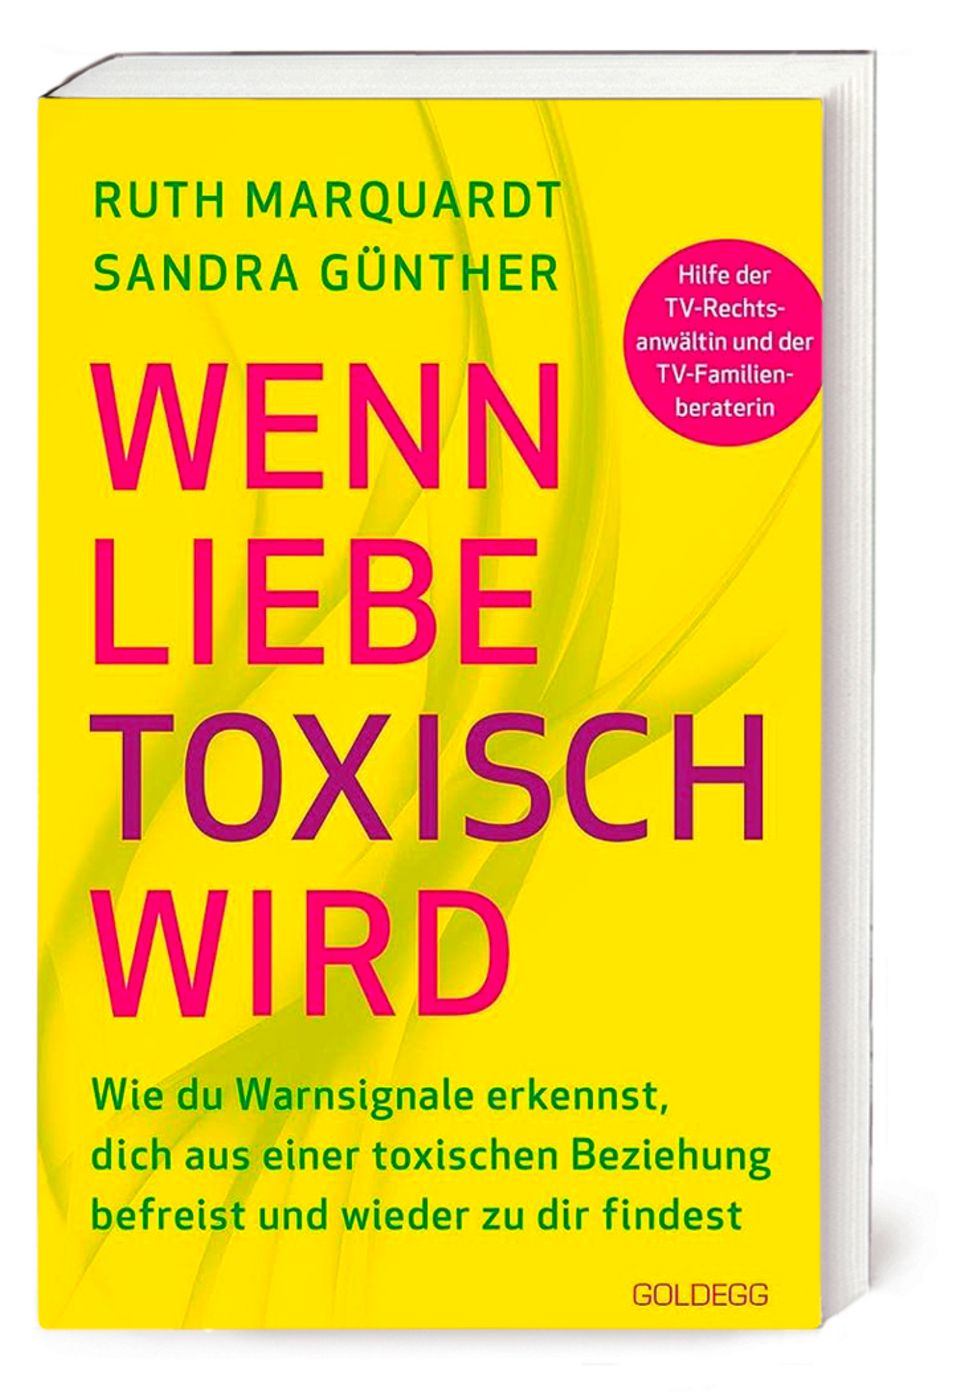 Buchcover "Wenn Liebe toxisch wird" von Ruth Marquardt und Sandra Günther